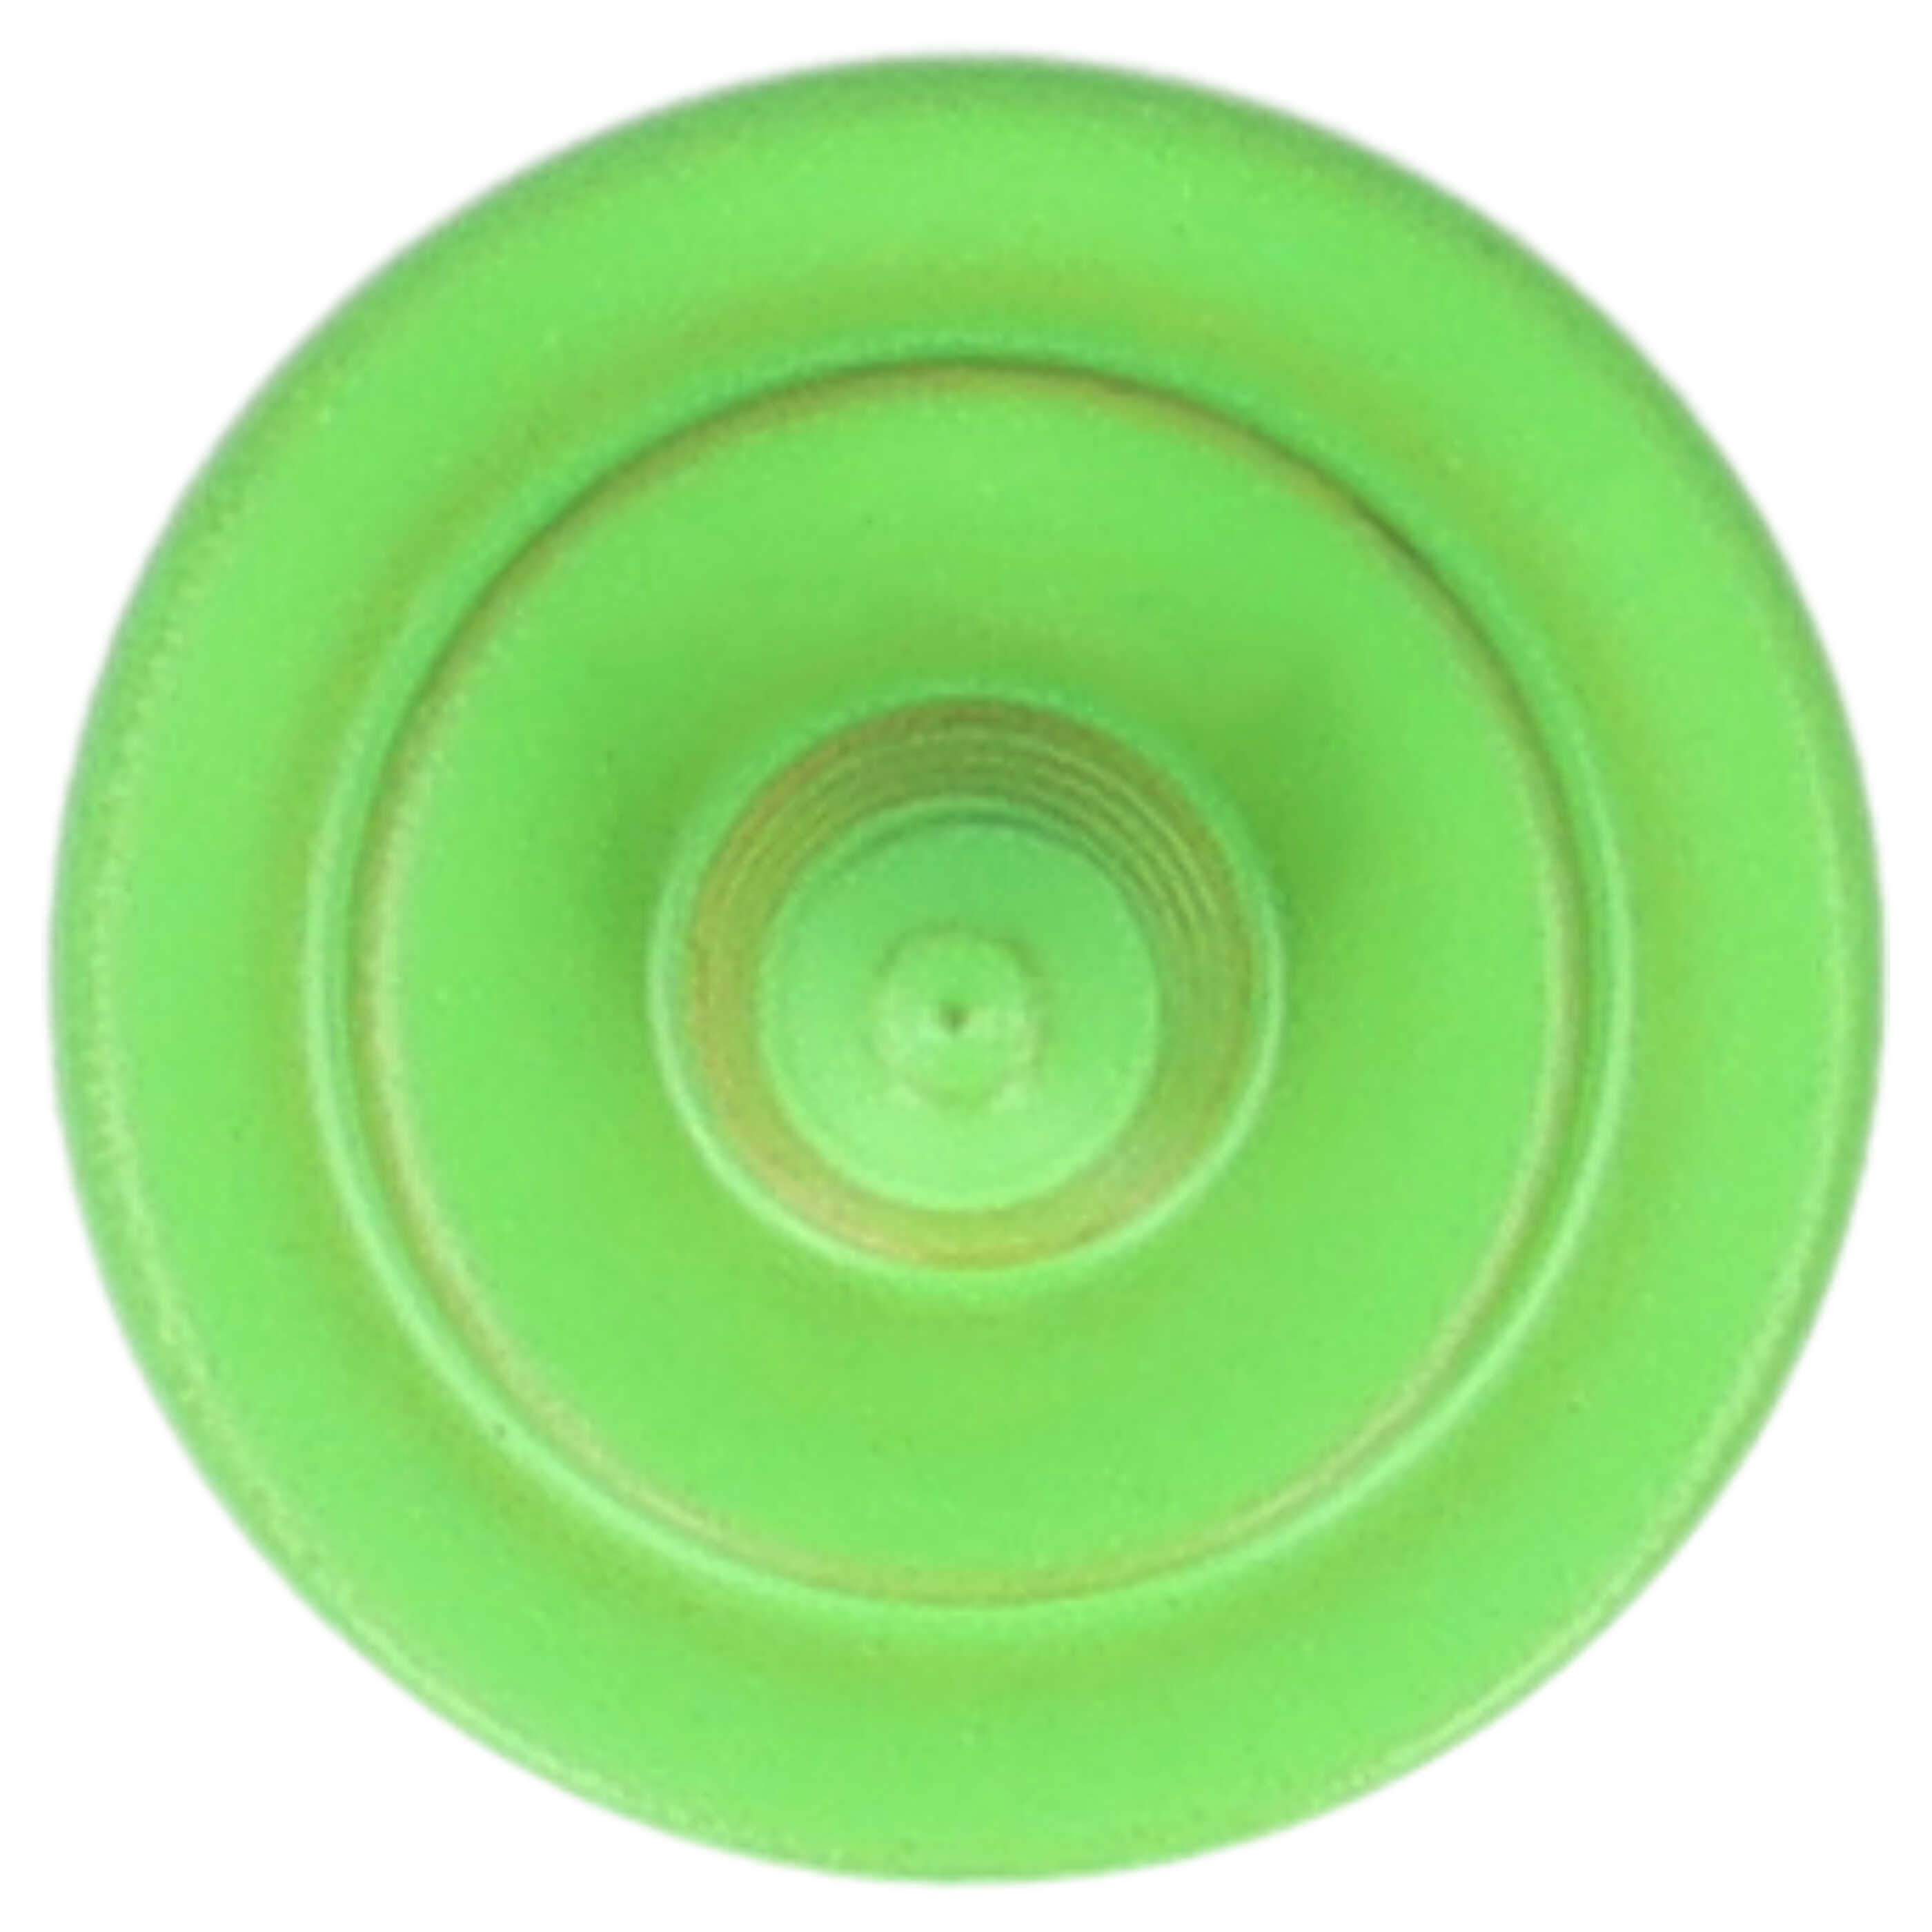 Release Button suitable for X-E1 FujifilmCamera etc. - Metal, Green